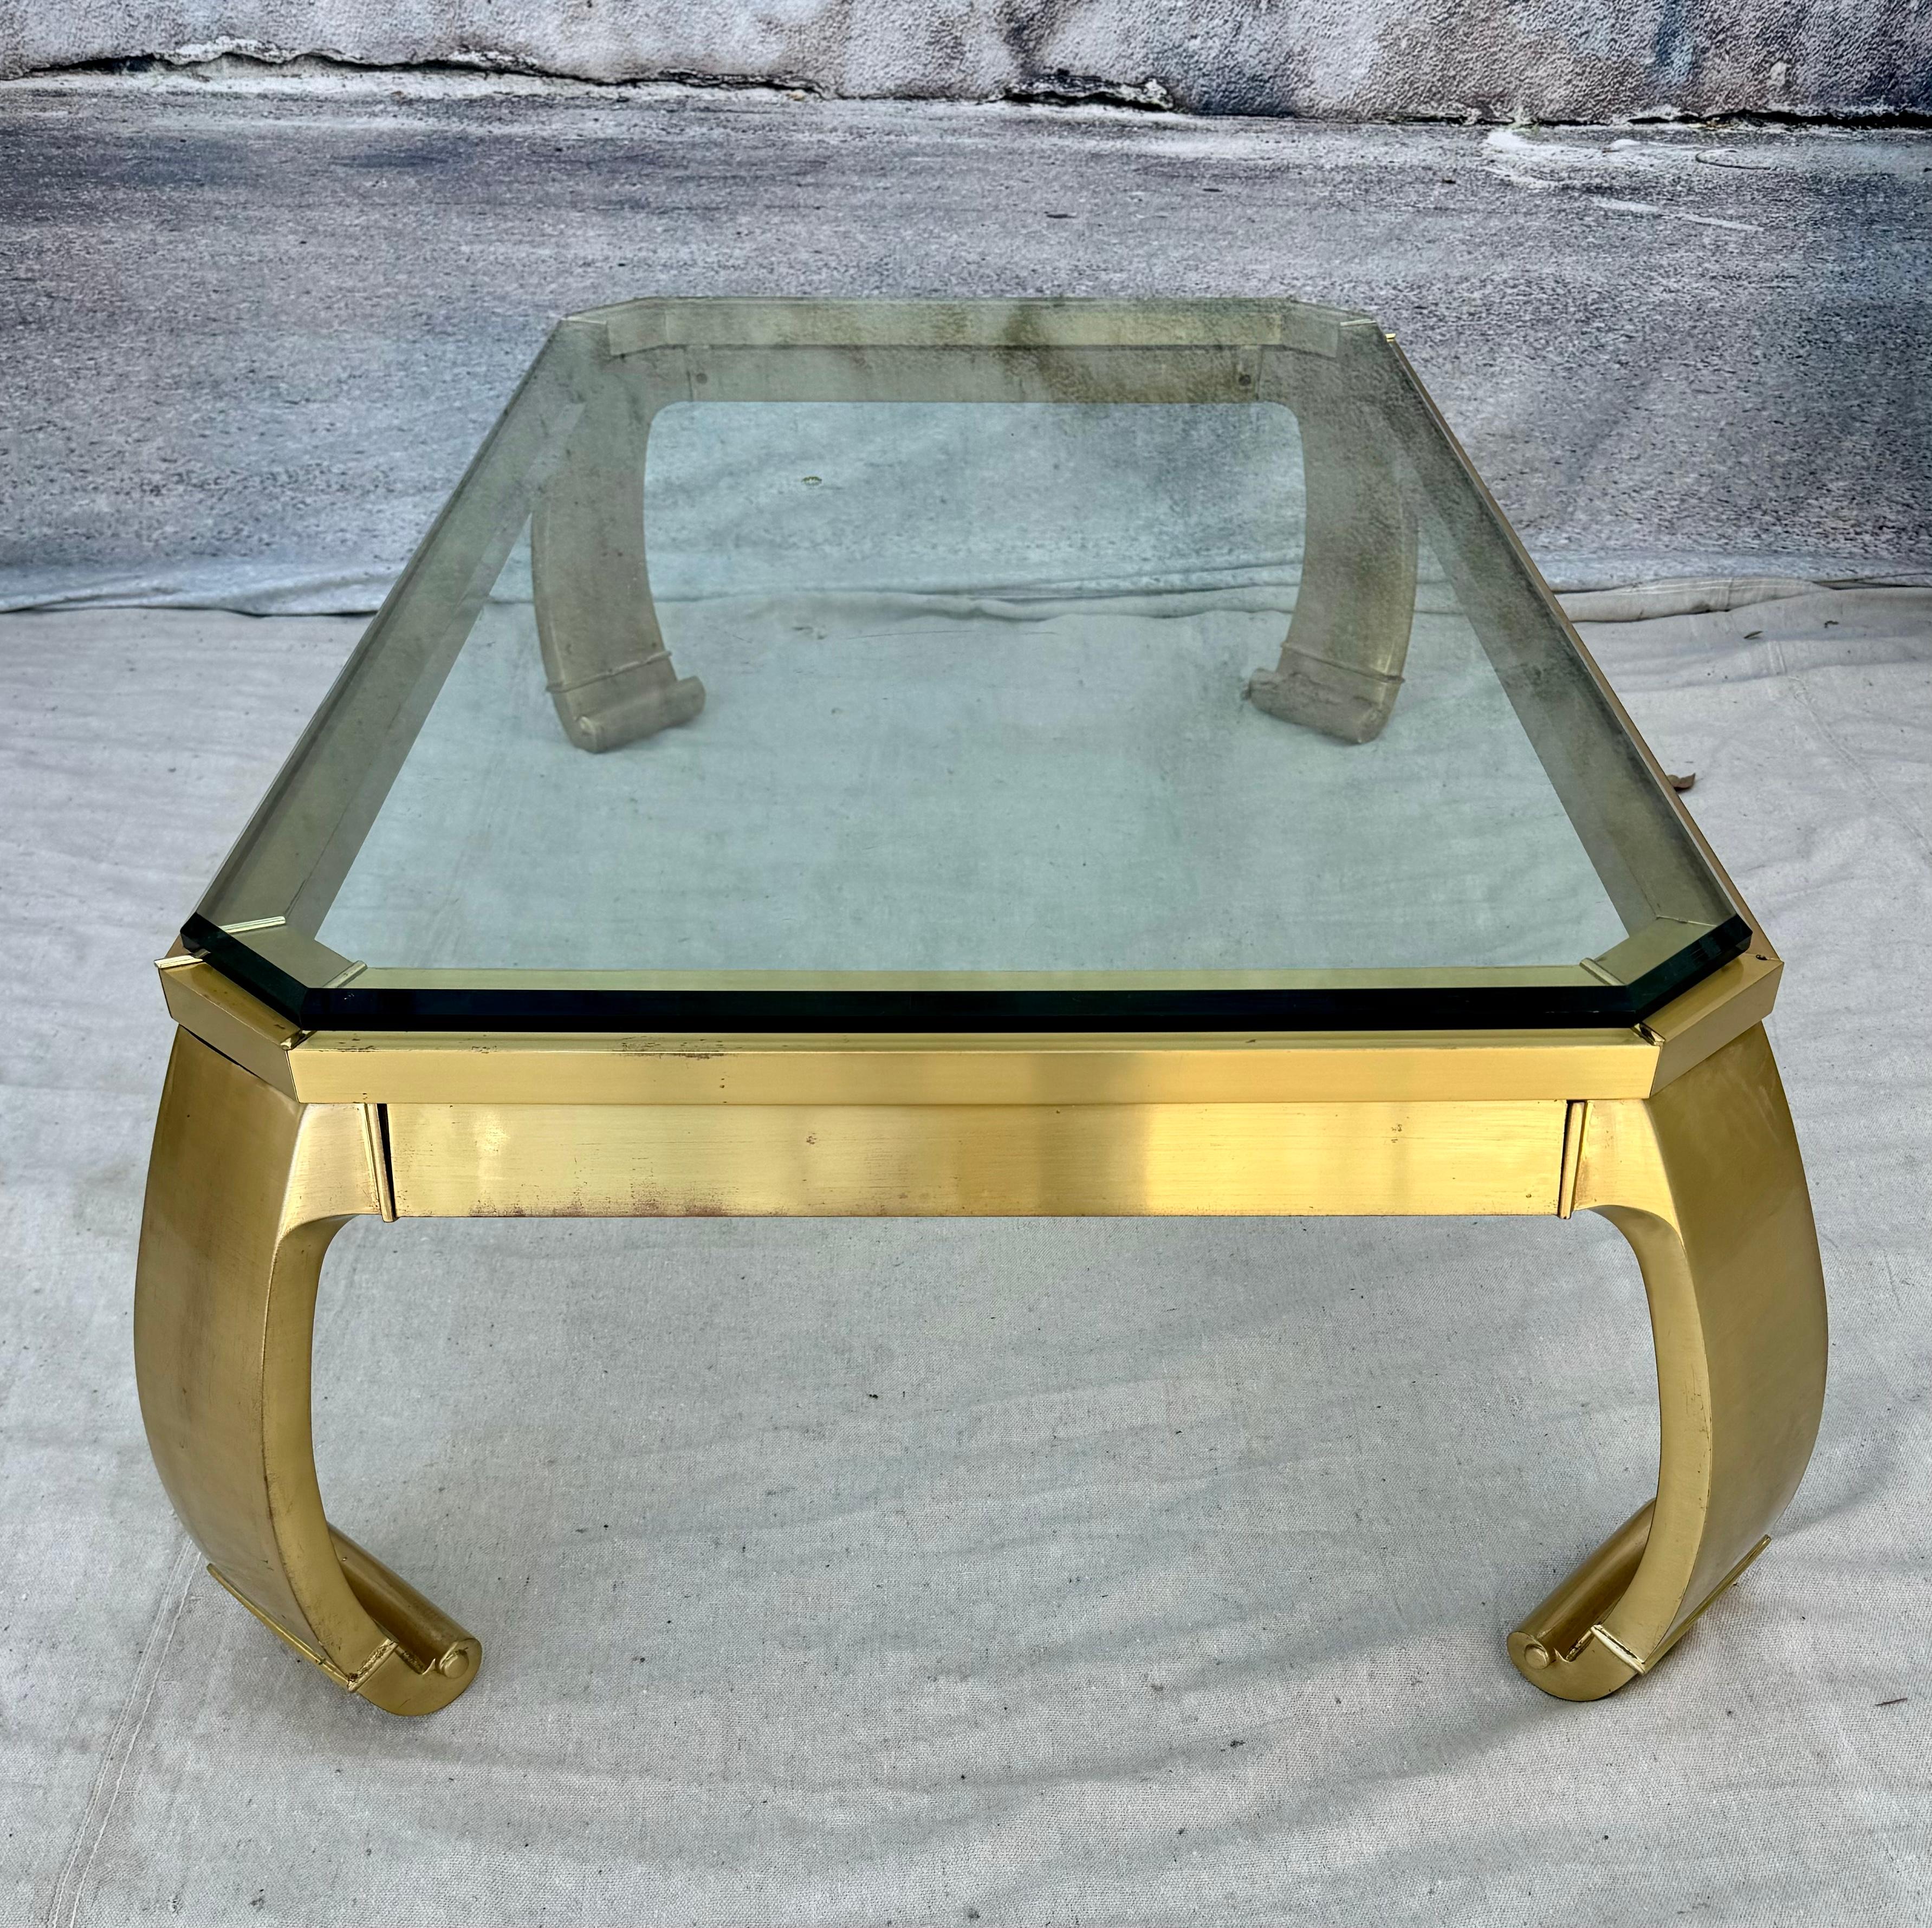 Cette table basse asiatique rectangulaire vintage des années 1960 est dans le style emblématique de Mastercraft, et présente un cadre en laiton avec des pieds arrondis avec des orteils en volute. Le dessus est en verre biseauté épais. Cette élégante